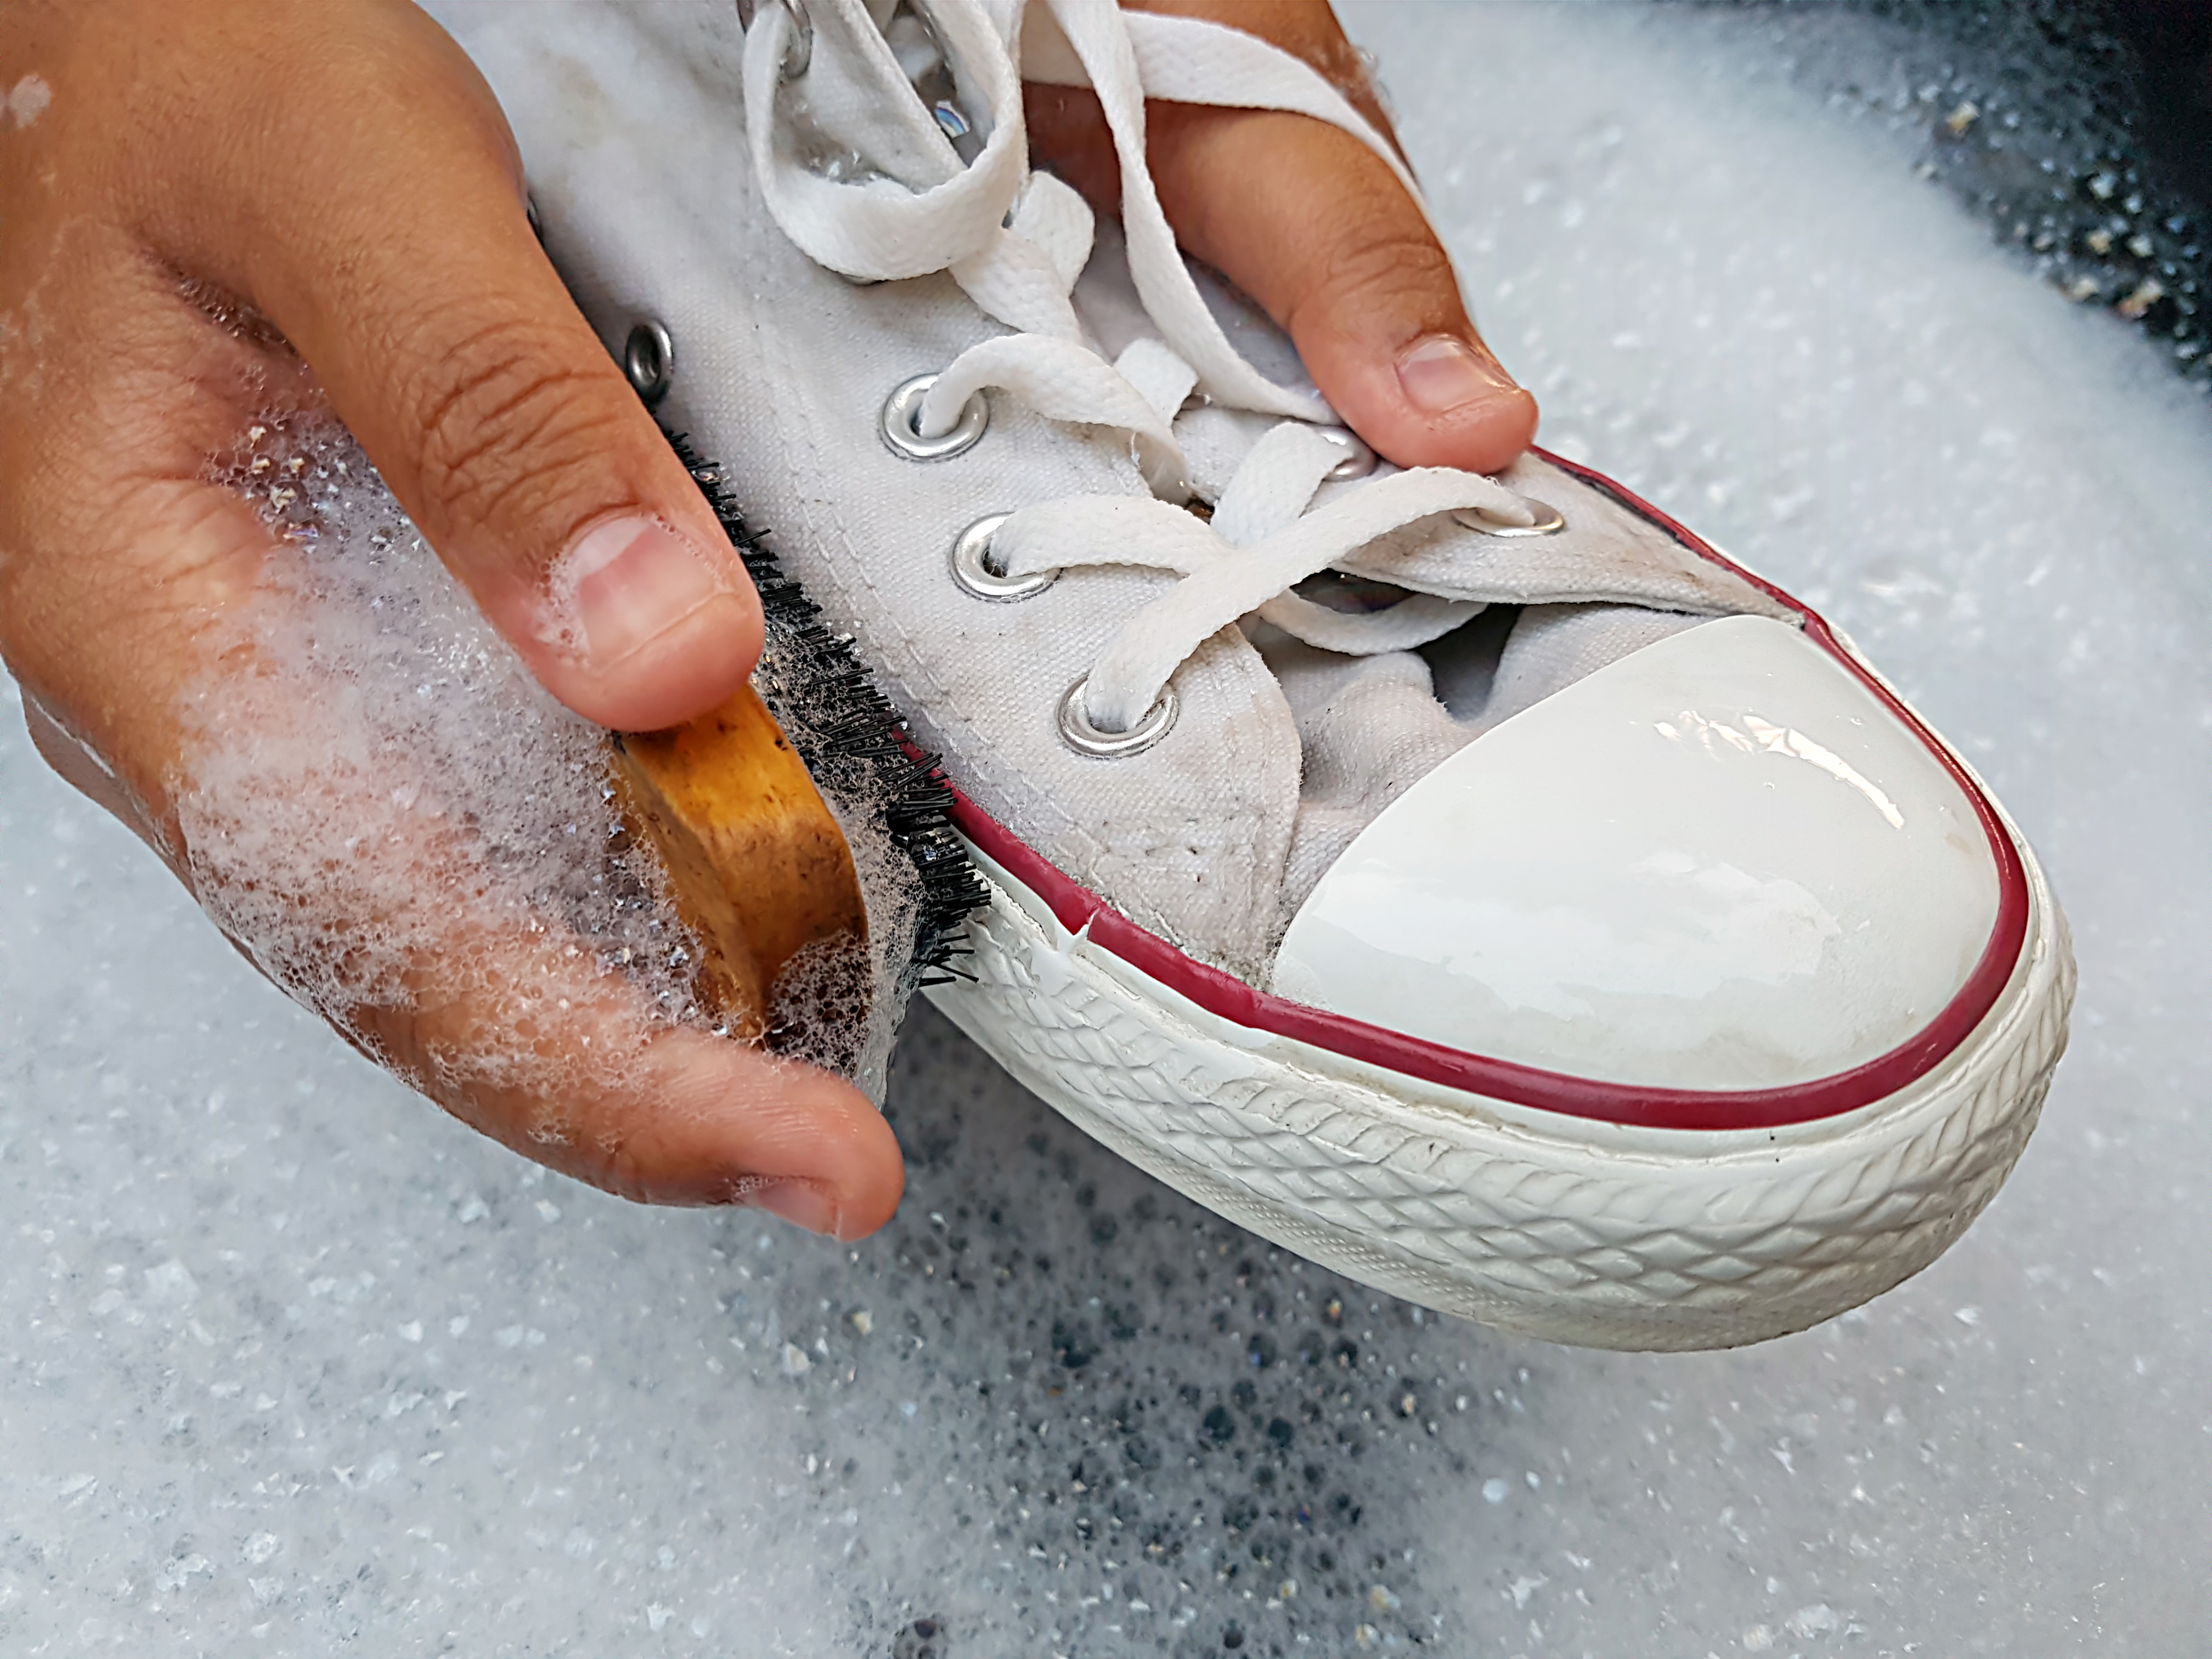 Descubre algunos trucos caseros para limpiar las suelas de tus zapatos -  Bien Bonita